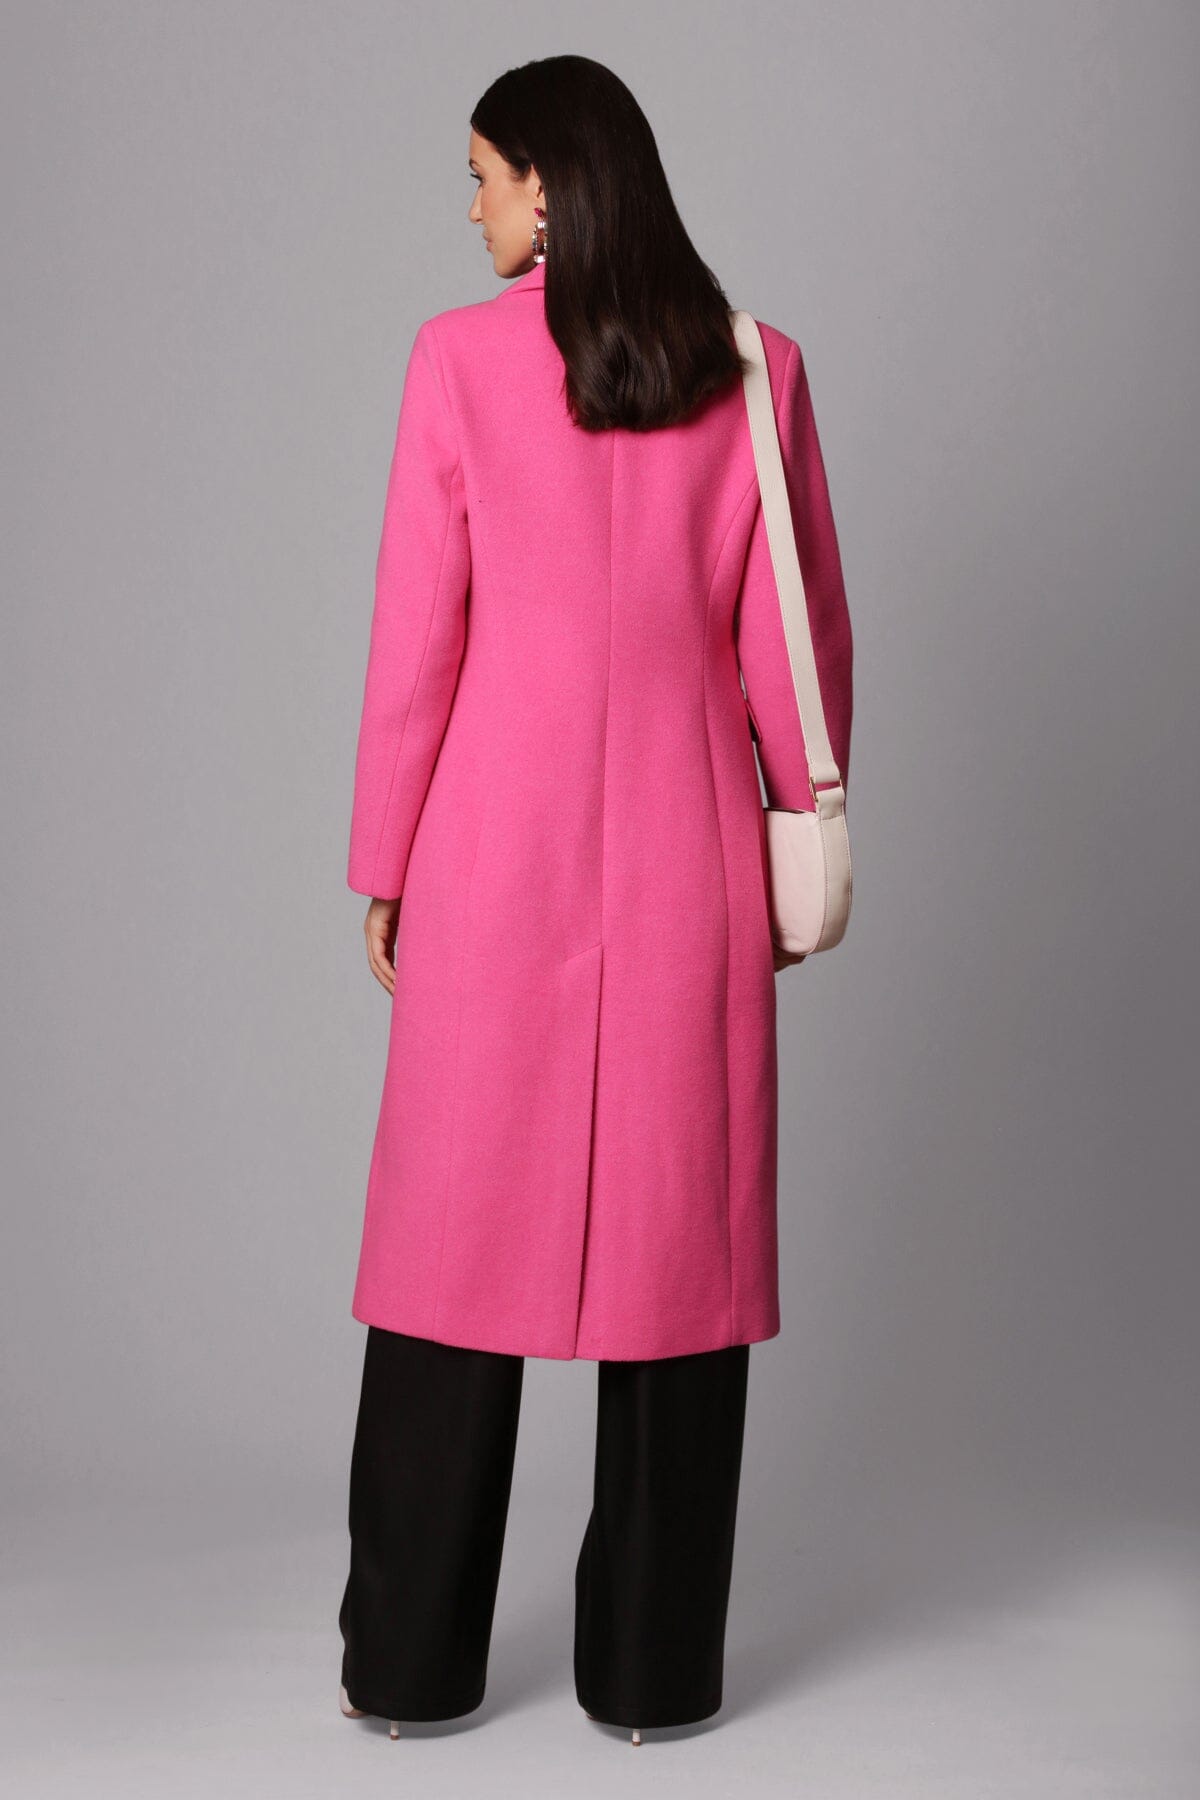 Fuschia pink wool blend longline blazer coat jacket - figure flattering cute fall 2023 outerwear for women